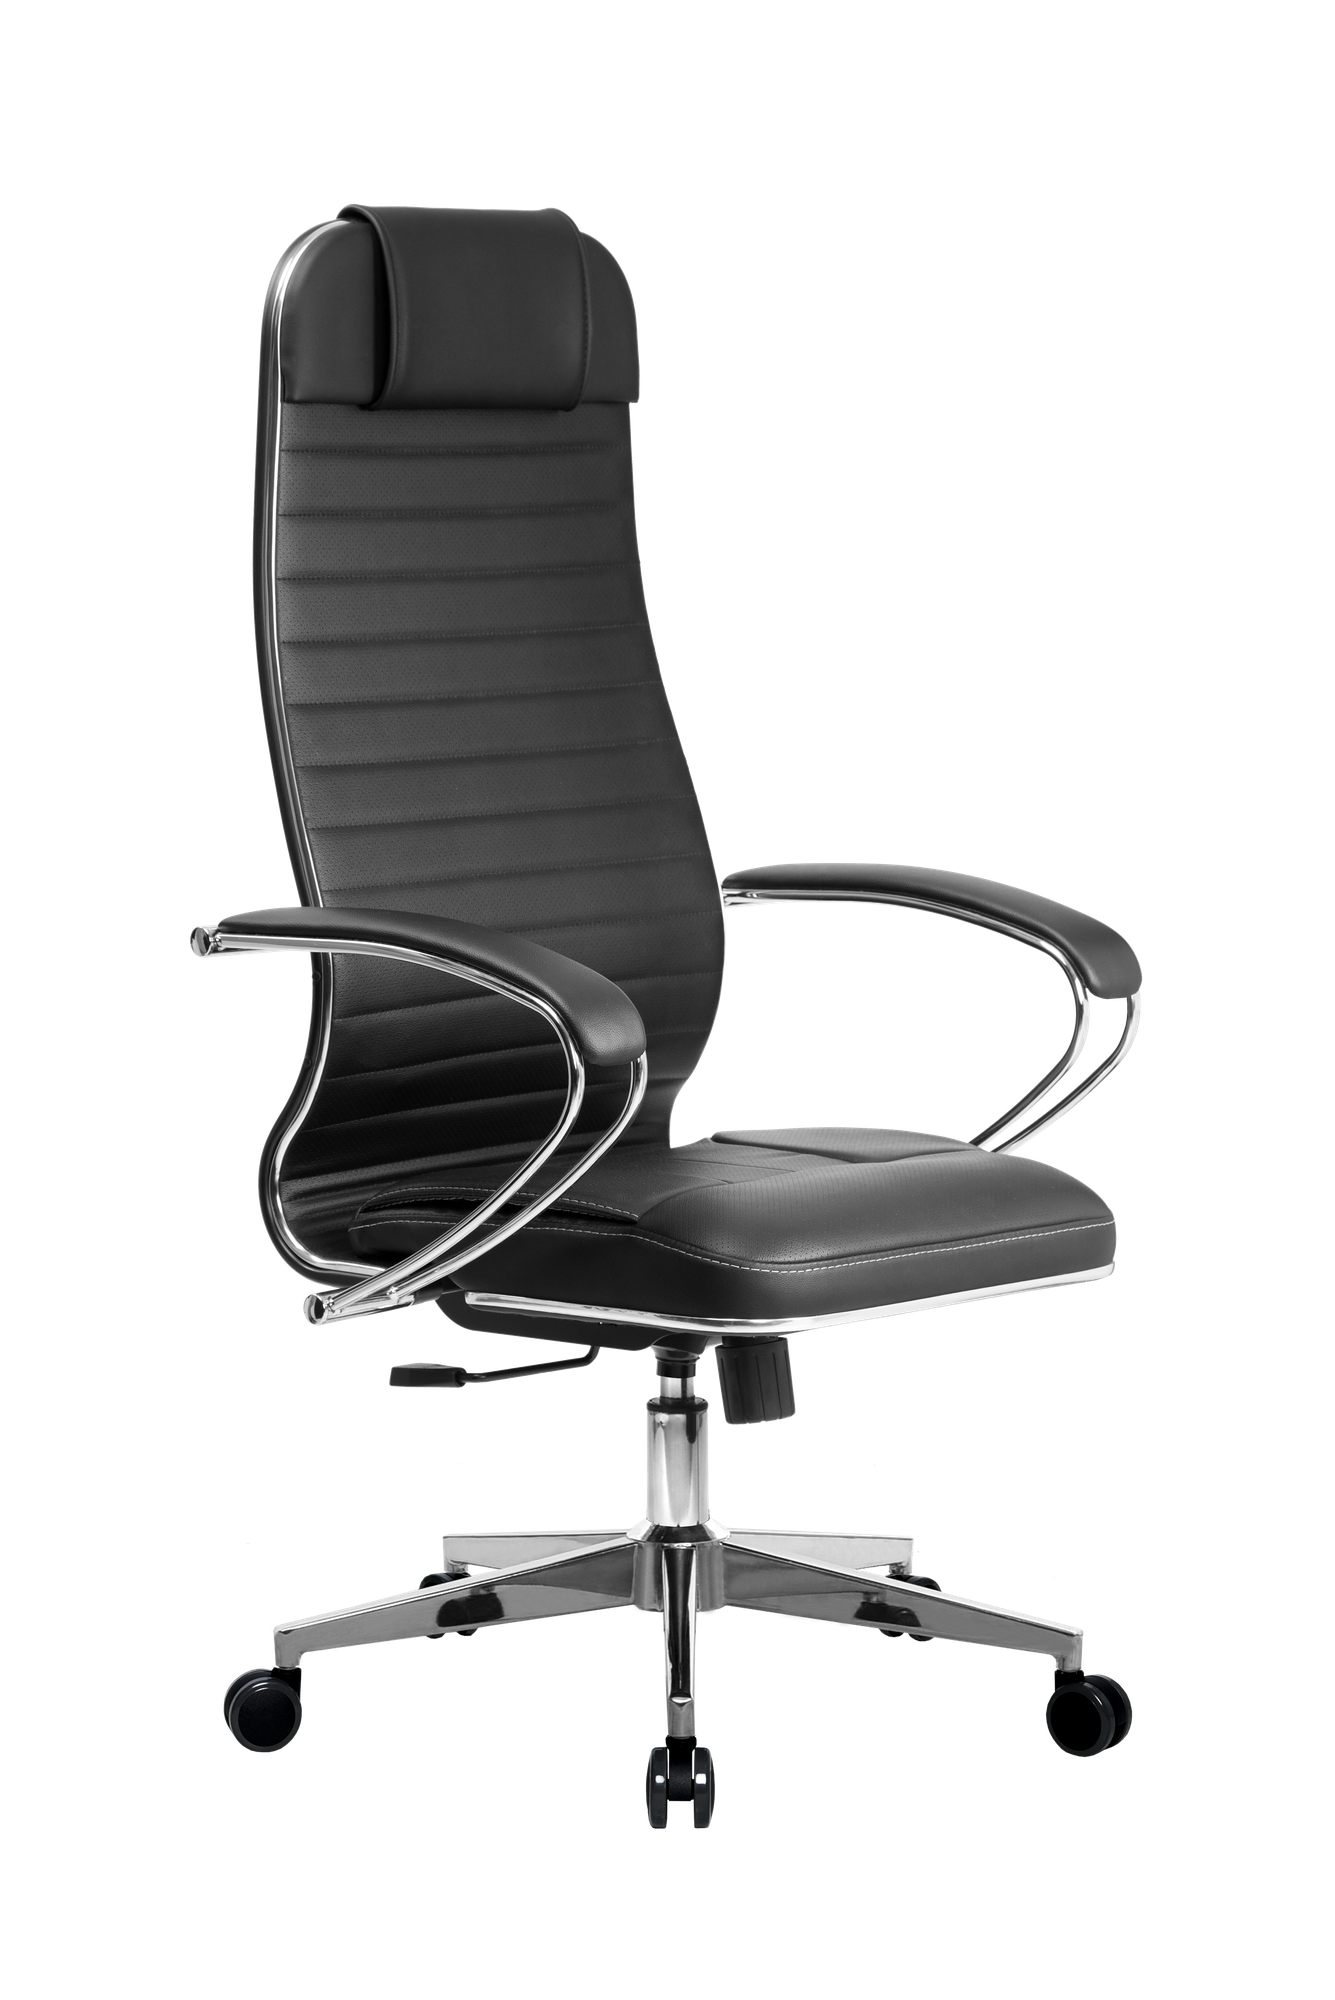 Кресло Metta К-6, 116x48x126, черное, мягкое, экокожа/текстиль, офисное кресло, компьютерное кресло, кресло самурай, кресло для дома и офиса, кресто Metta